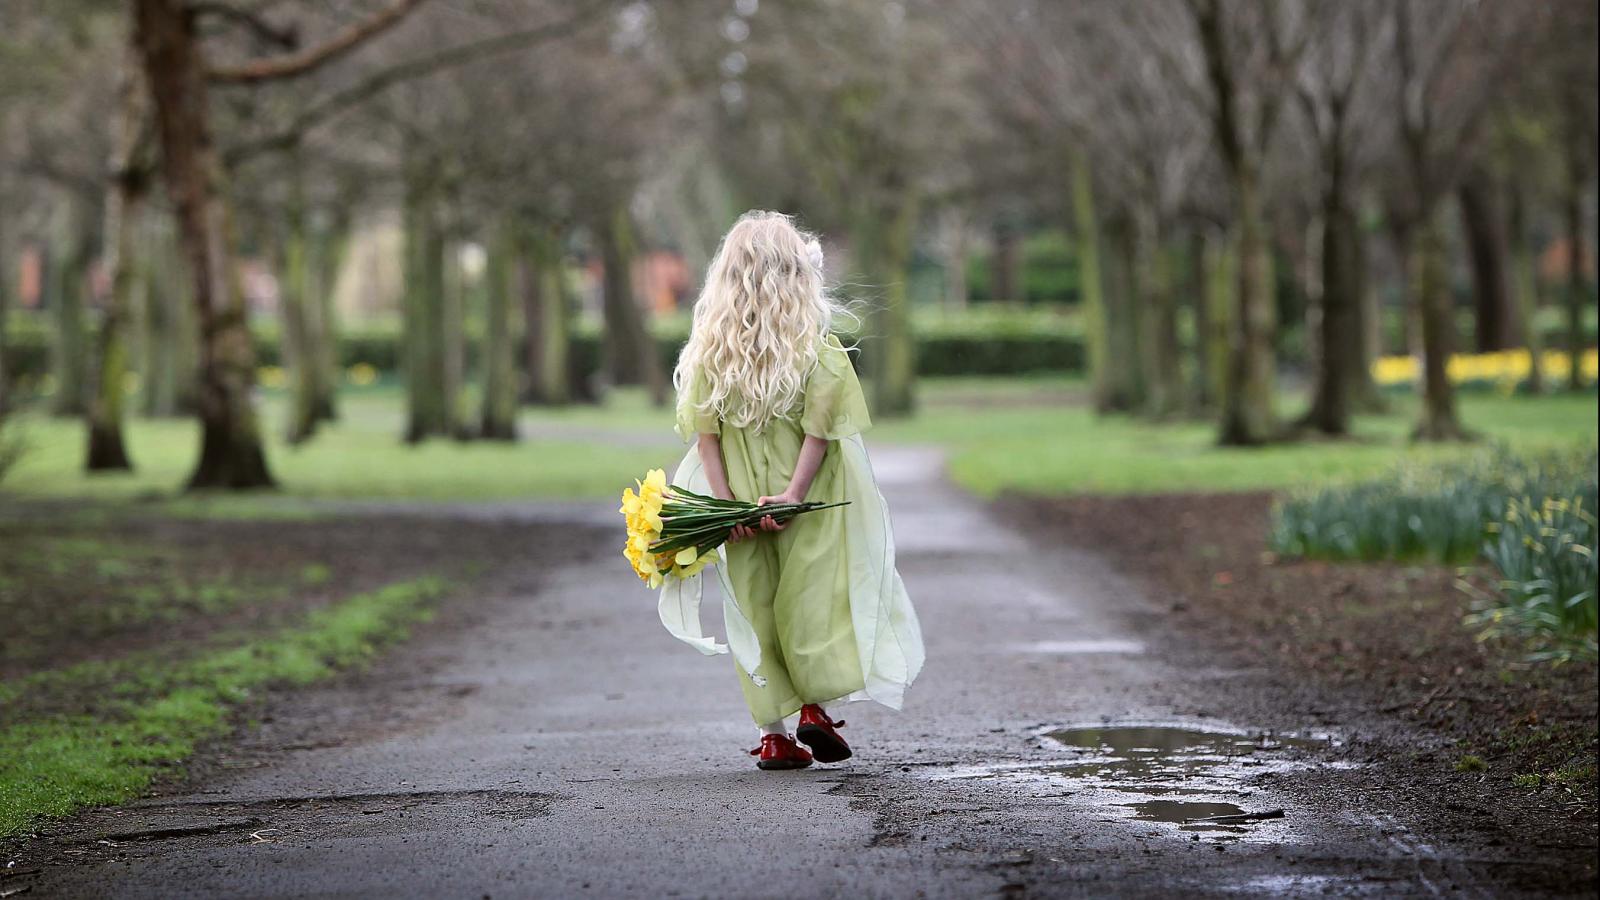 daffodil day girl in park